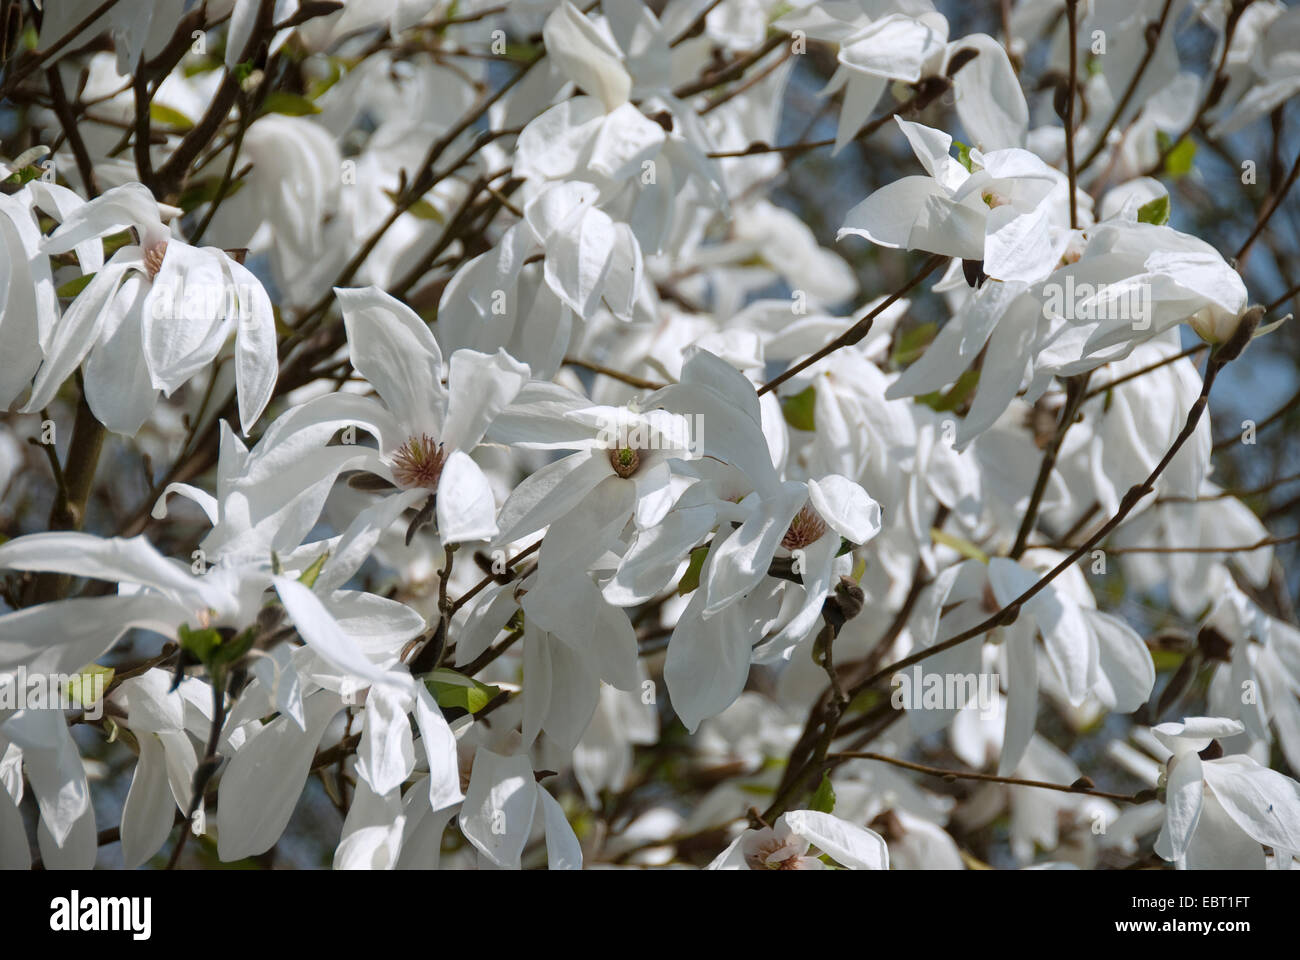 Magnolia (Magnolia 'Wada memoria dell', Magnolia Wada la memoria), cultivar ama la memoria, fiori Foto Stock